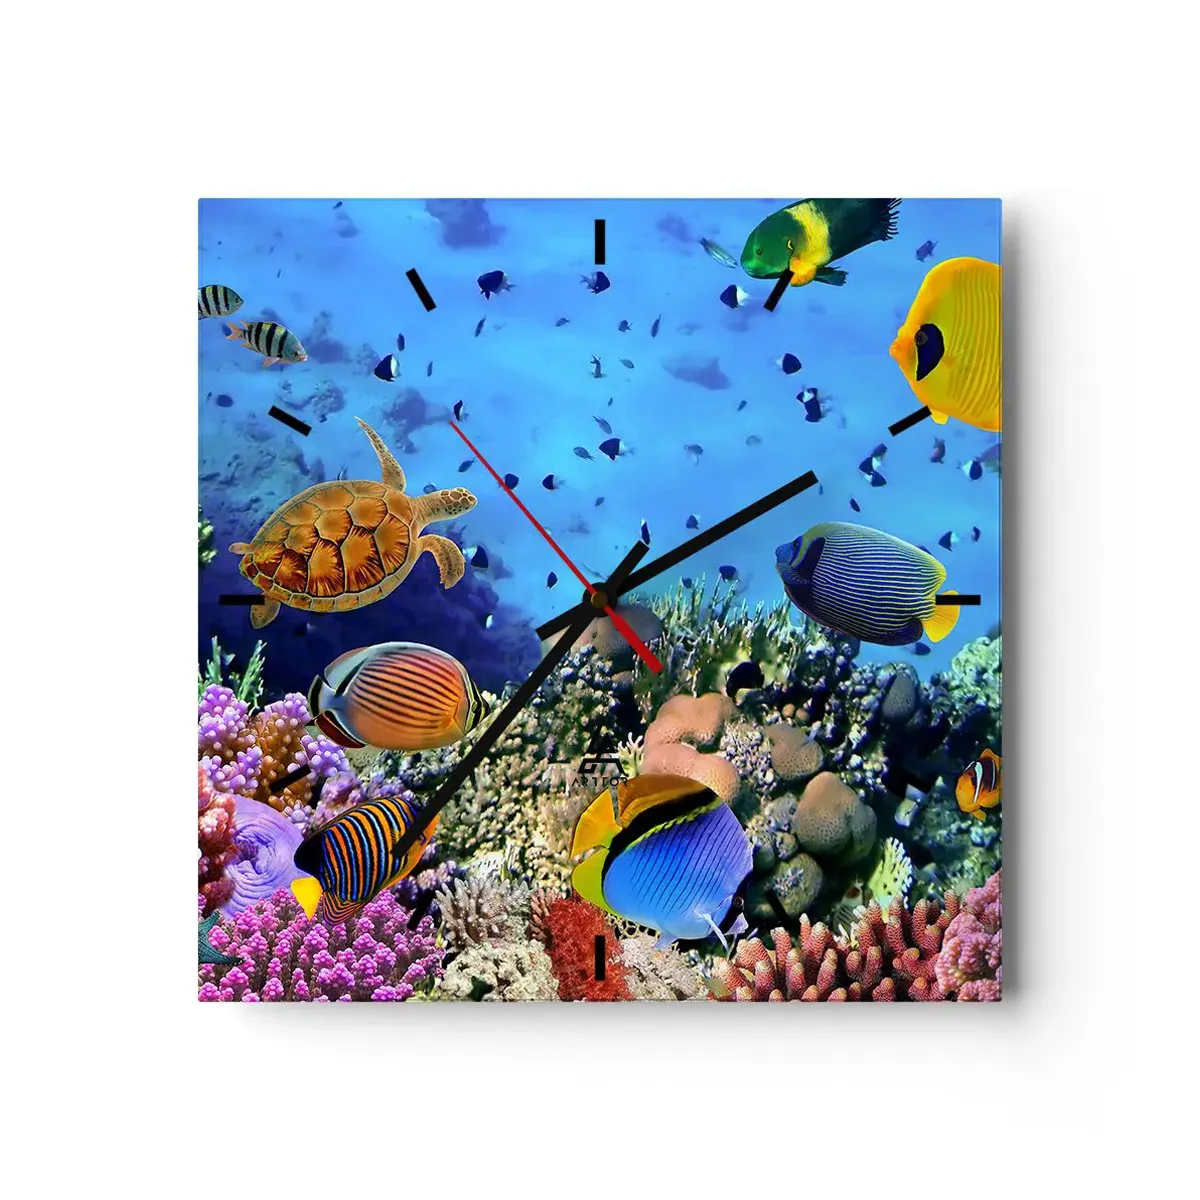 Orologio da parete Arttor - Ma cosa sappiamo della vita - Quadrante con  trattini, Forma: Quadrato - 40x40 cm - Barriera Corallina, Mondo  Sott'Acqua, Pesci